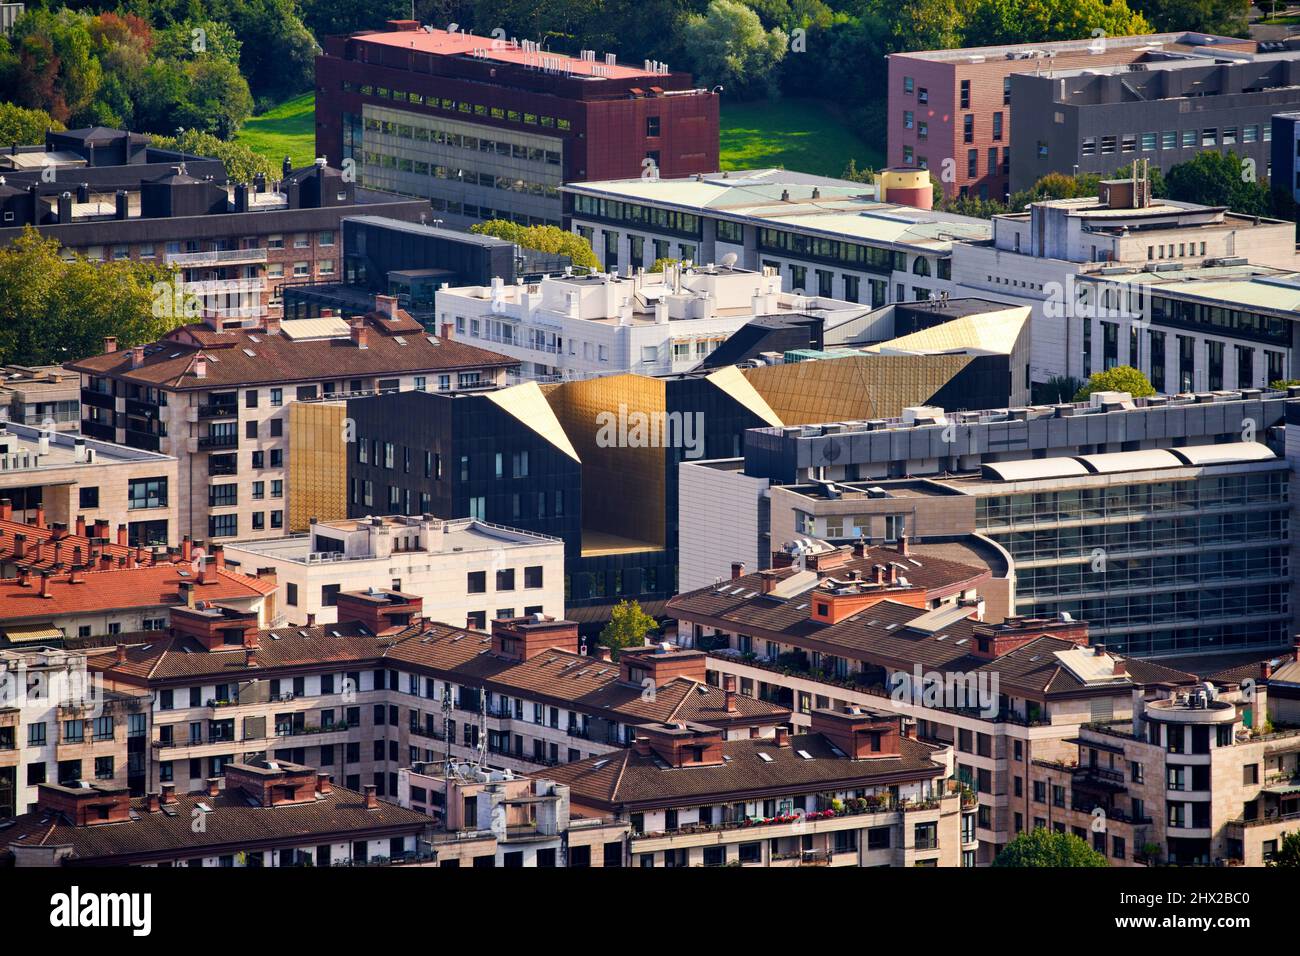 Edificio Musikene, Conservatorio de Música, Vista desde el Monte Igeldo, Barrio del Antiguo, Donostia, San Sebastián, ciudad cosmopolita de 187.000 habitantes, Foto de stock